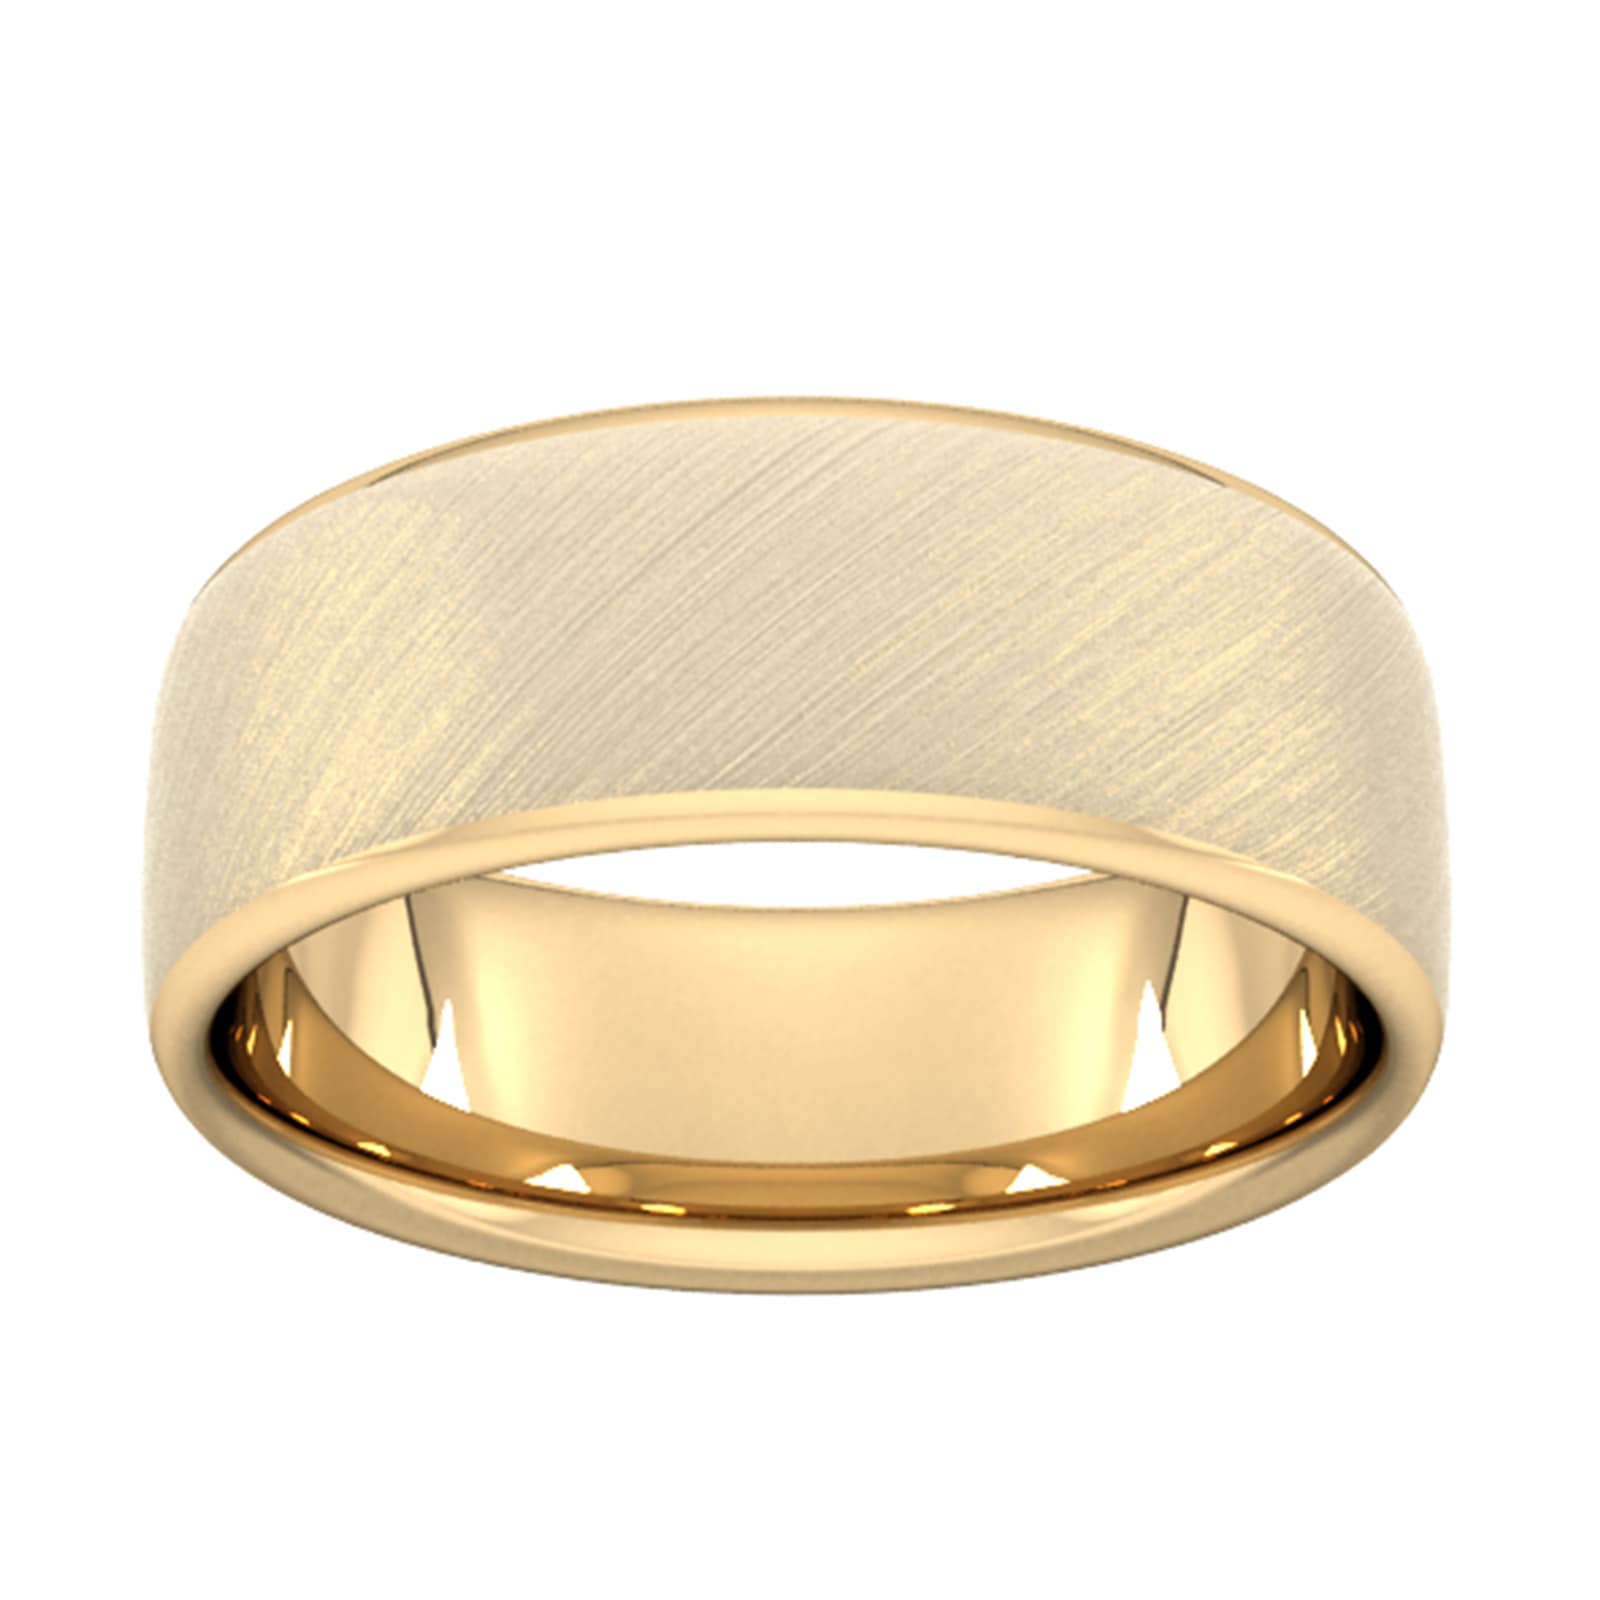 8mm Slight Court Extra Heavy Diagonal Matt Finish Wedding Ring In 18 Carat Yellow Gold - Ring Size K